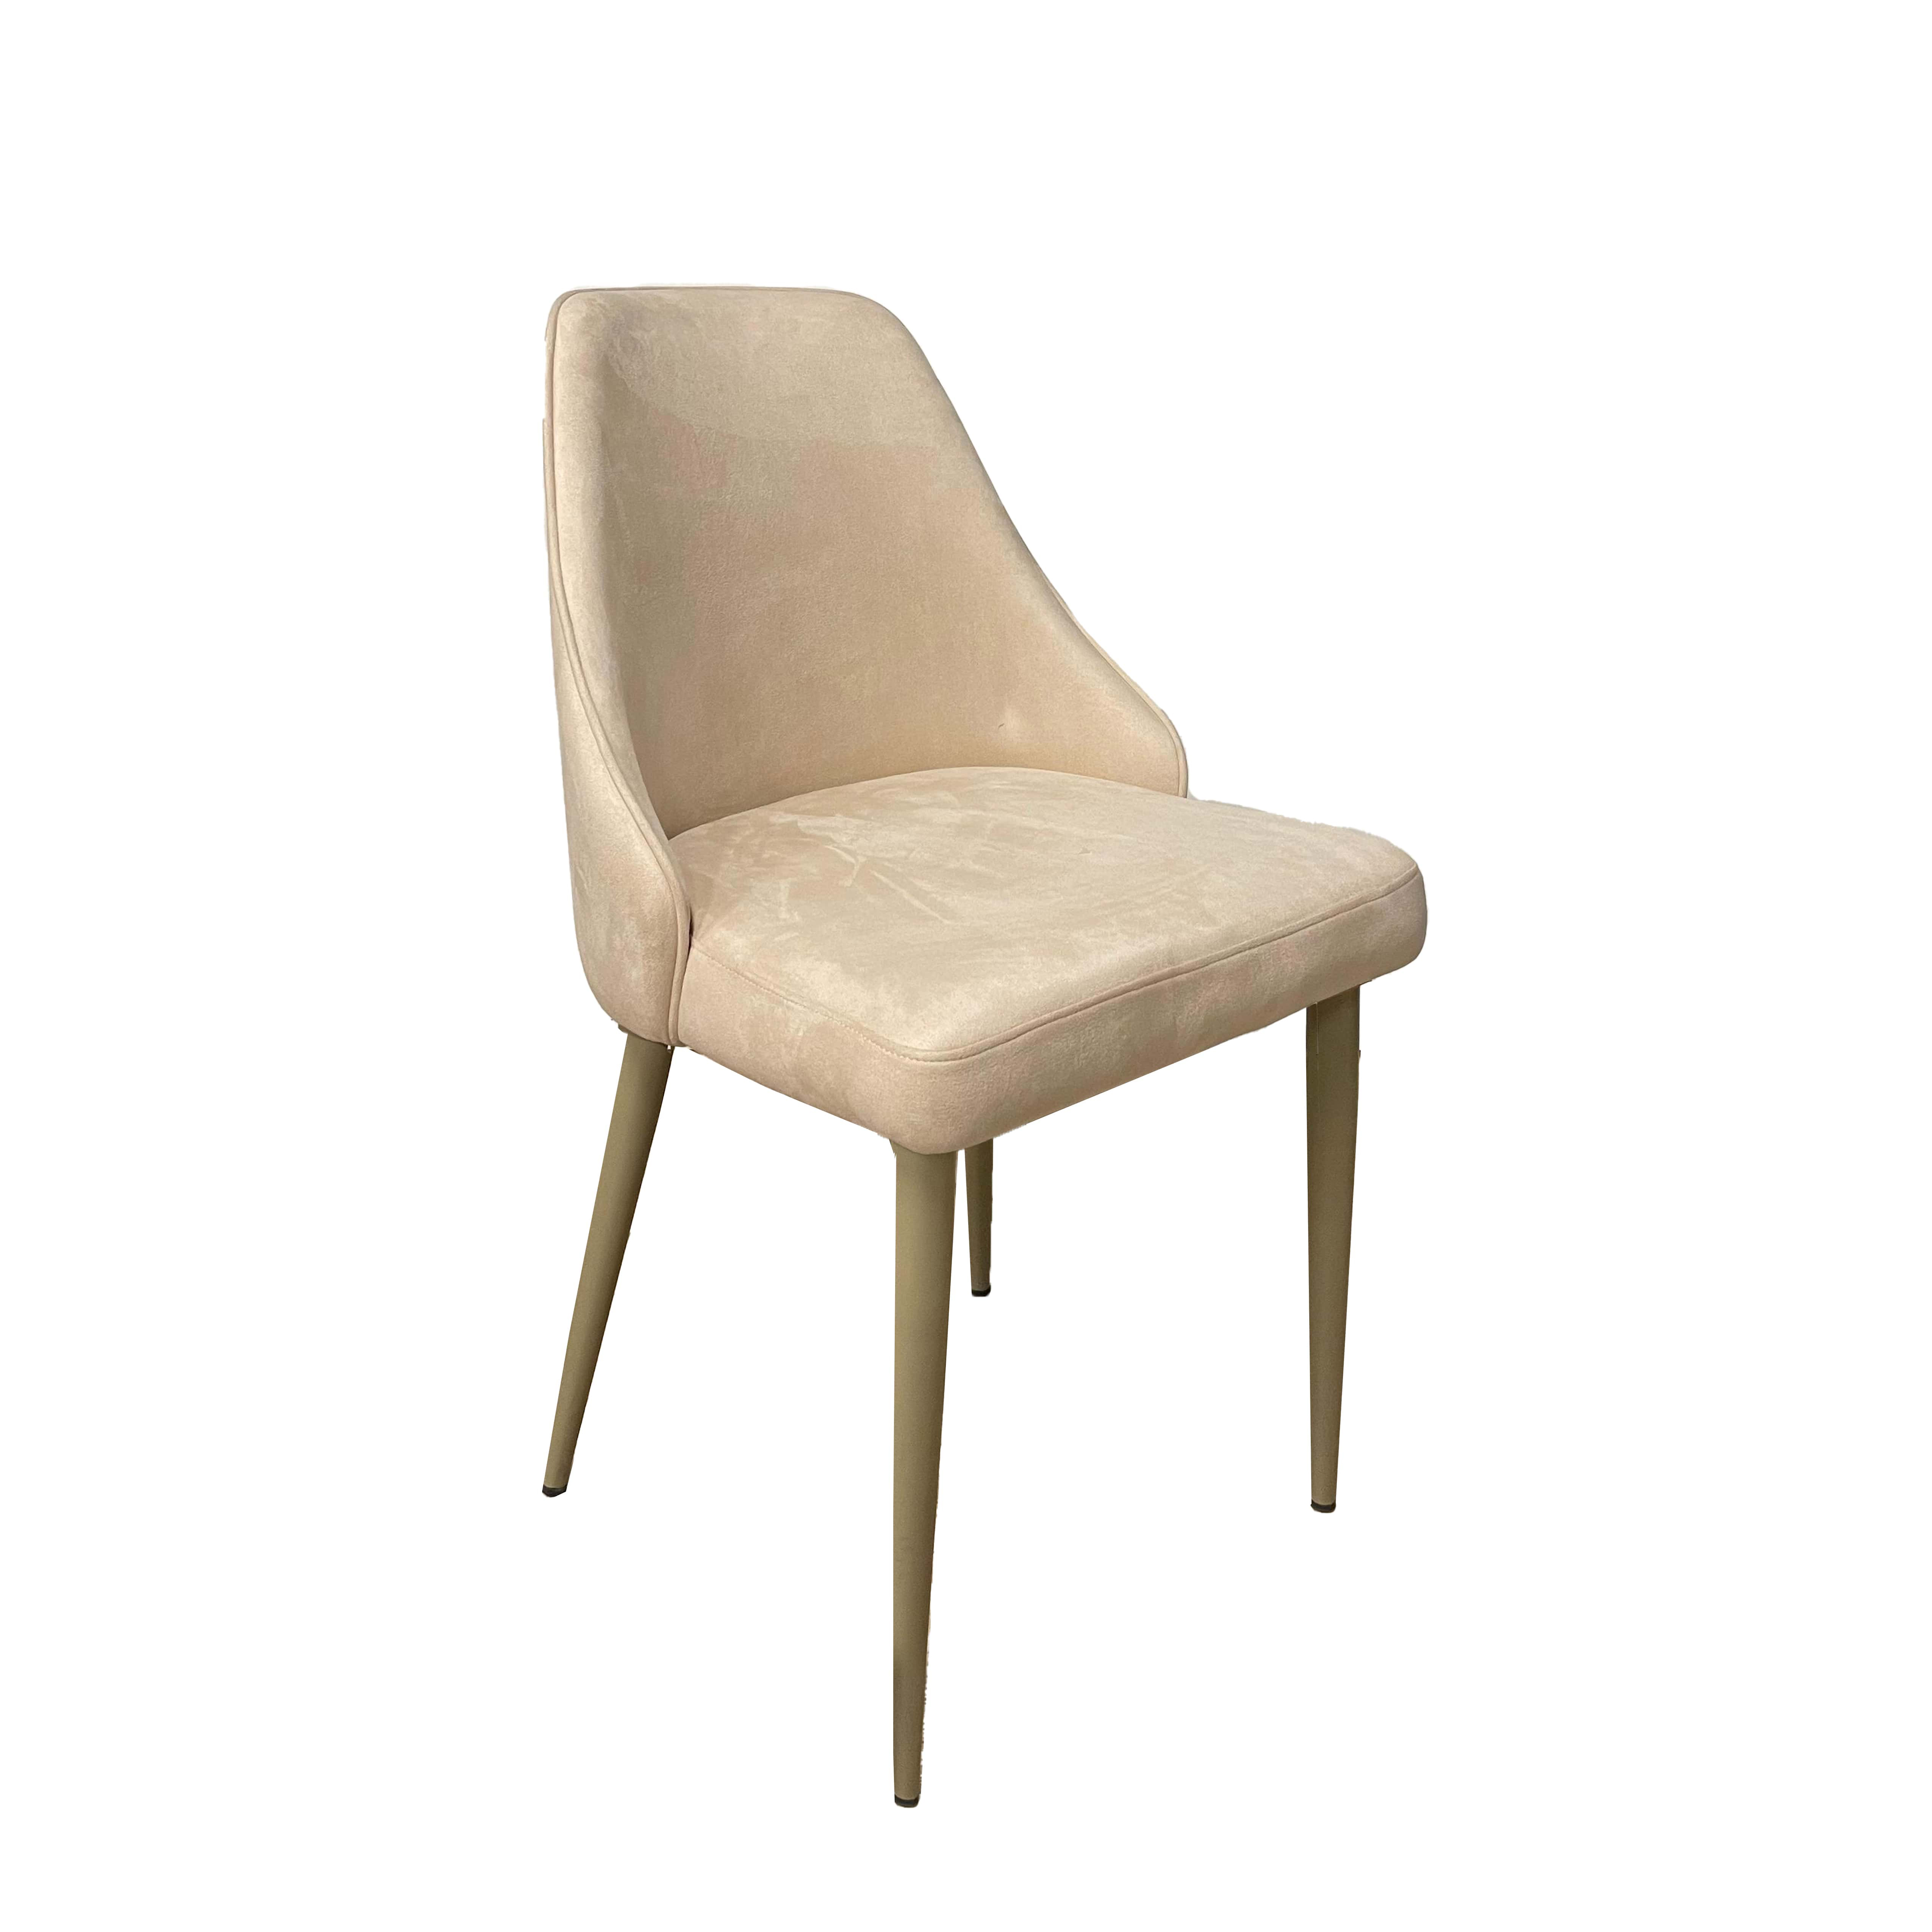 Odette Chair - Beige